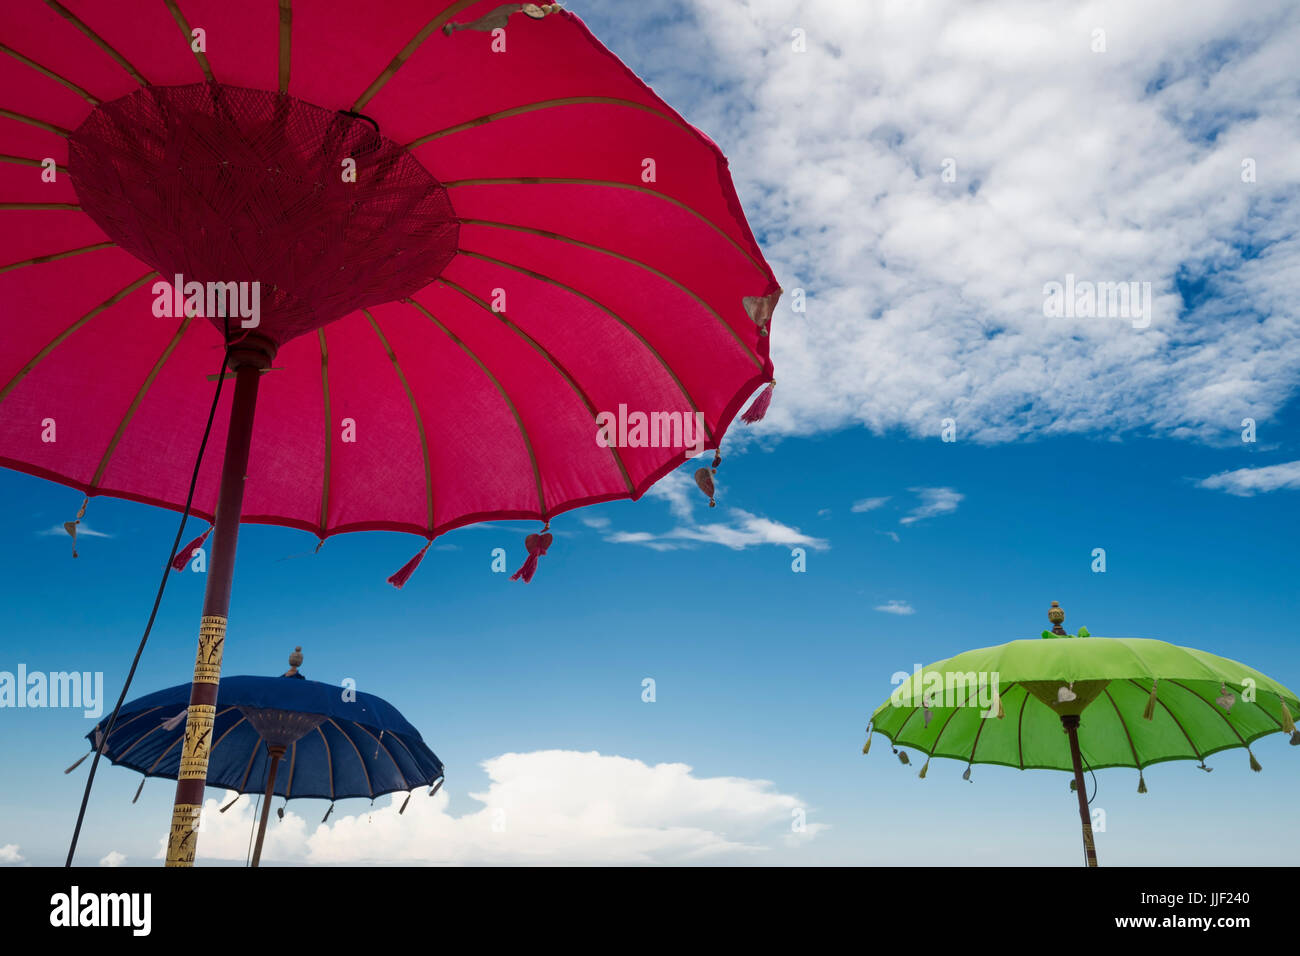 Sun umbrellas on a beach Stock Photo